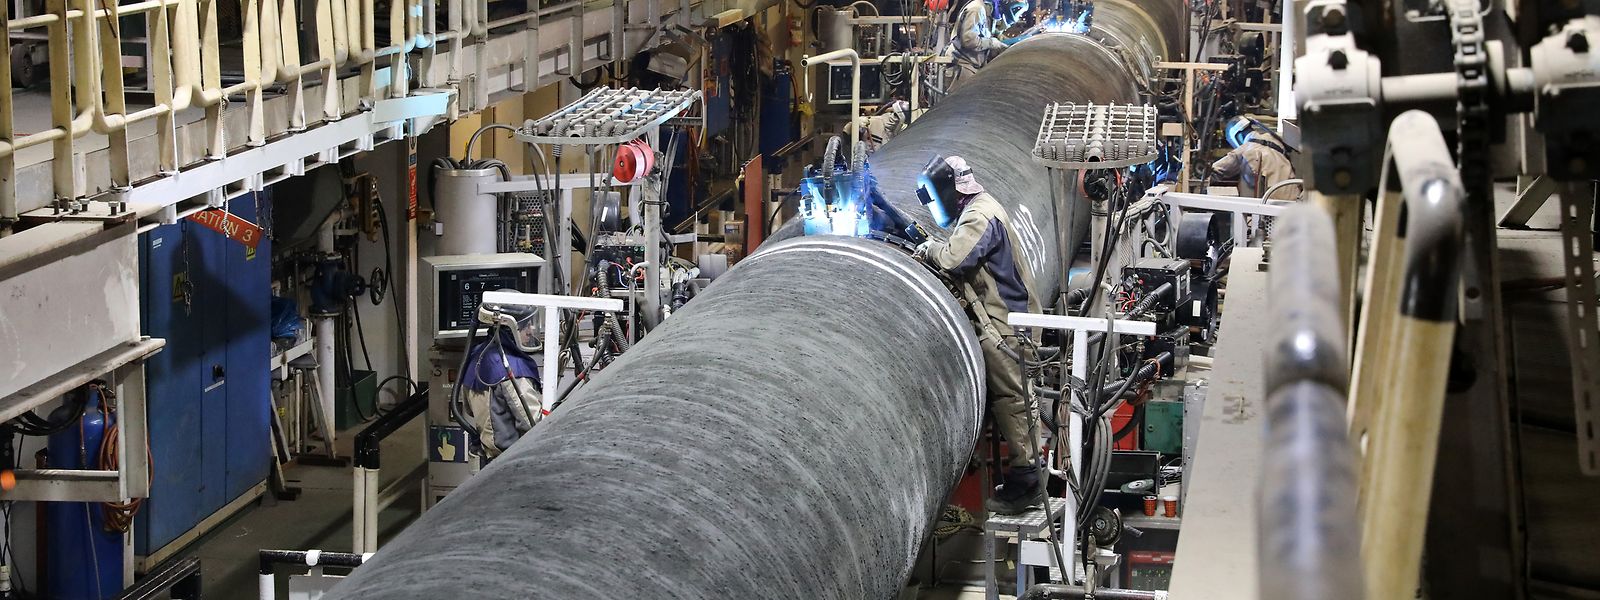 Uma das sanções previstas pela UE é o fecho do gasoduto Nord Stream 2.